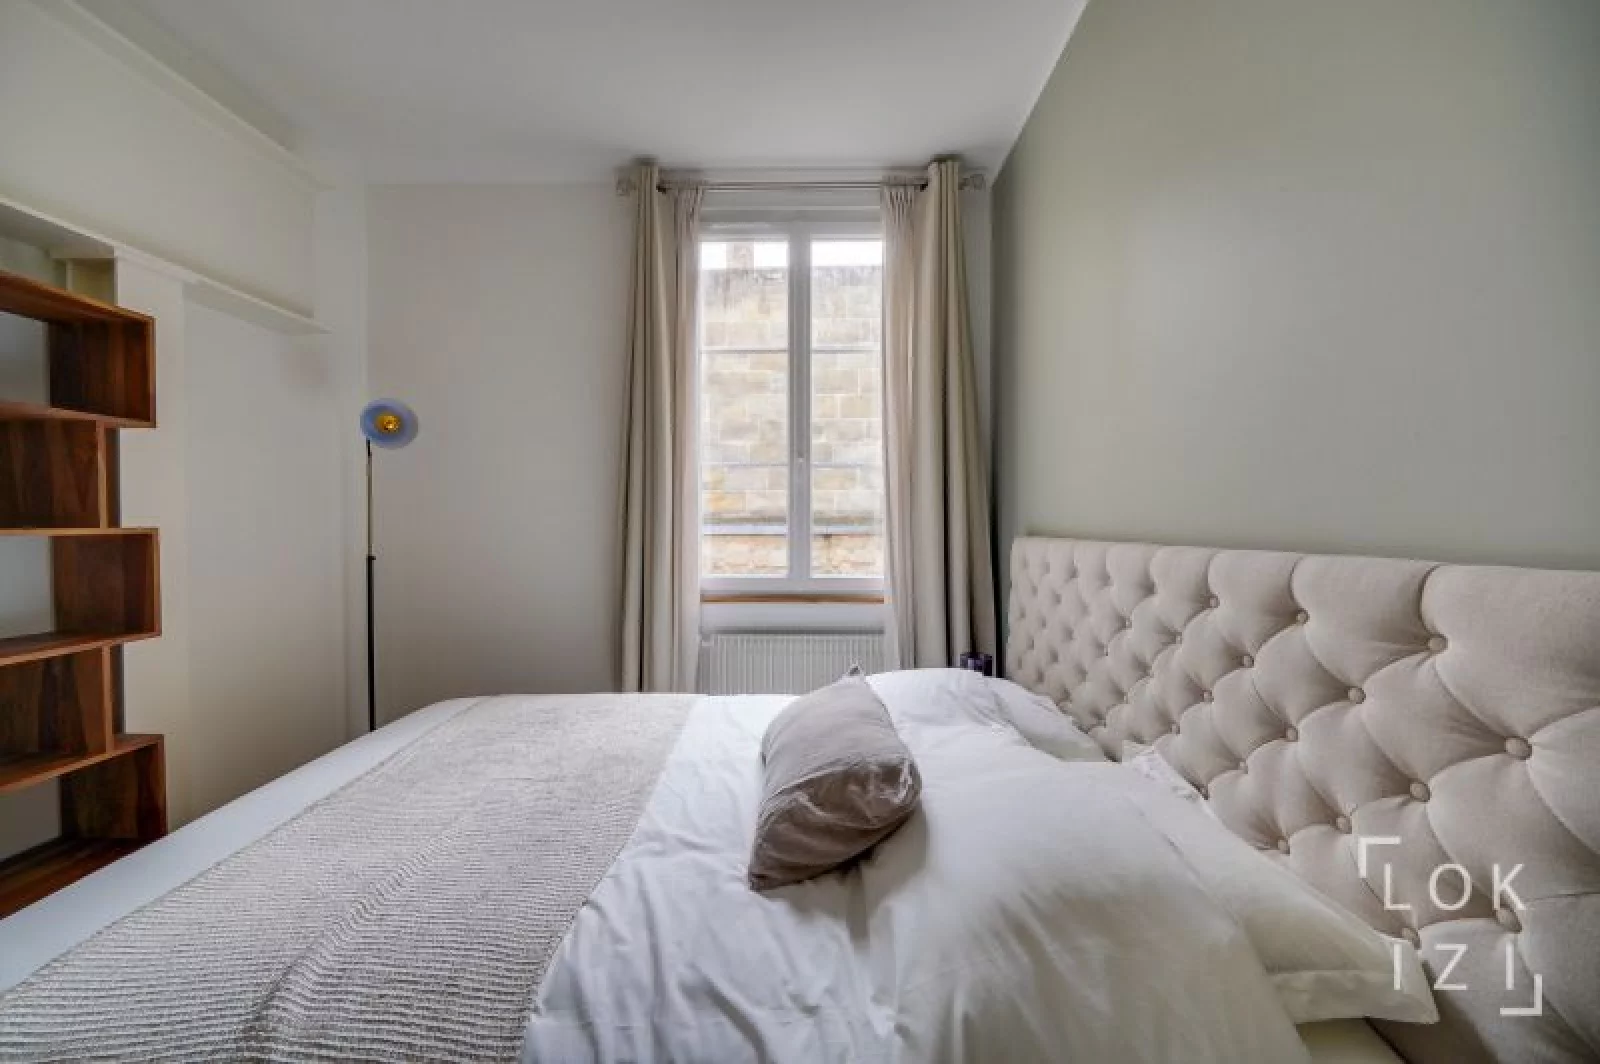 Location appartement meublé 3 pièces 73m² (Bordeaux - Chartrons)